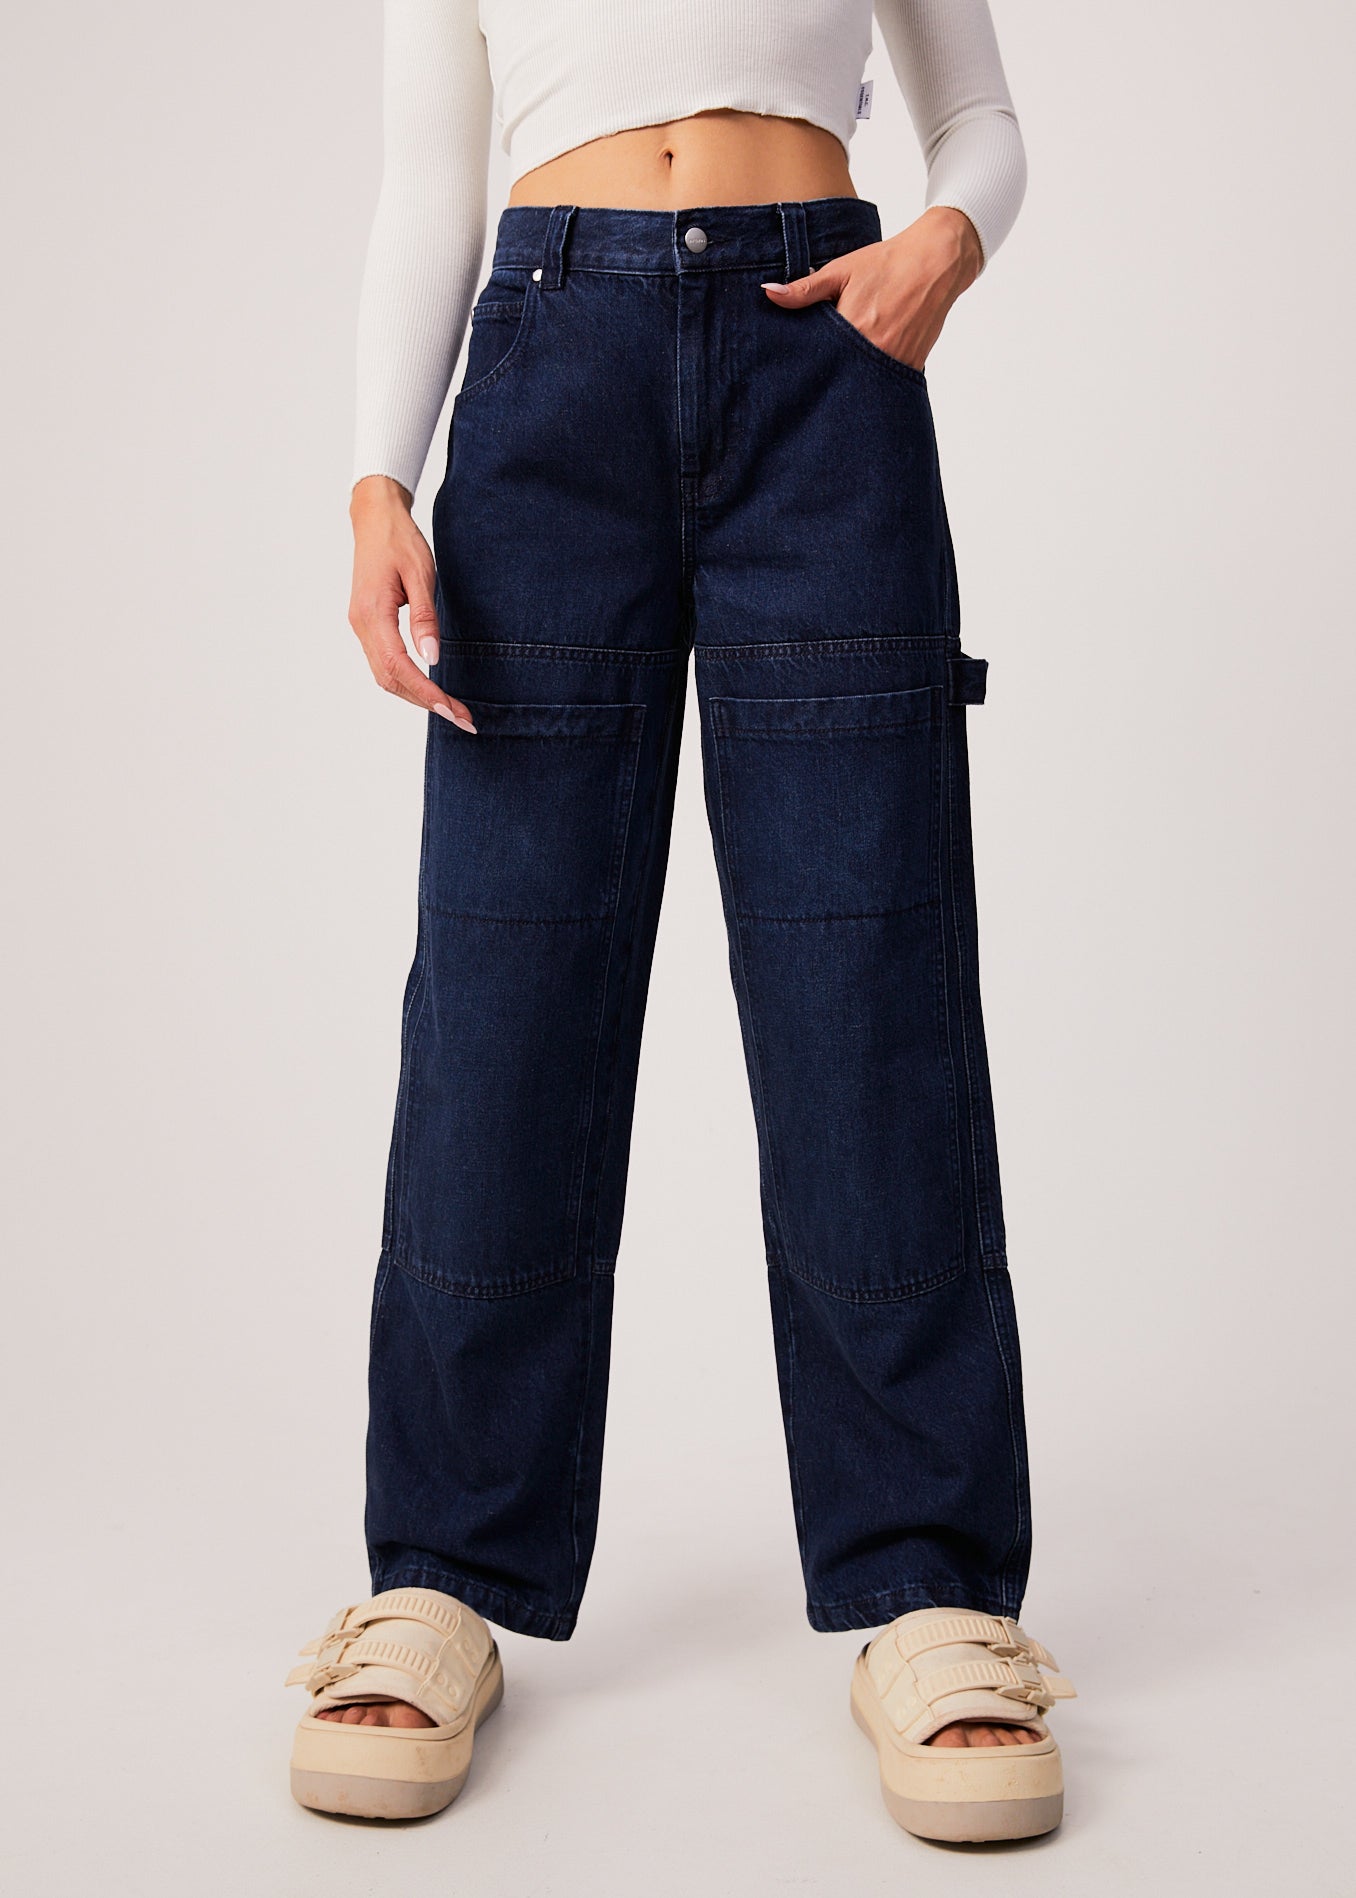 Afends Womens Moss - Hemp Denim Carpenter Jeans - Original Rinse 